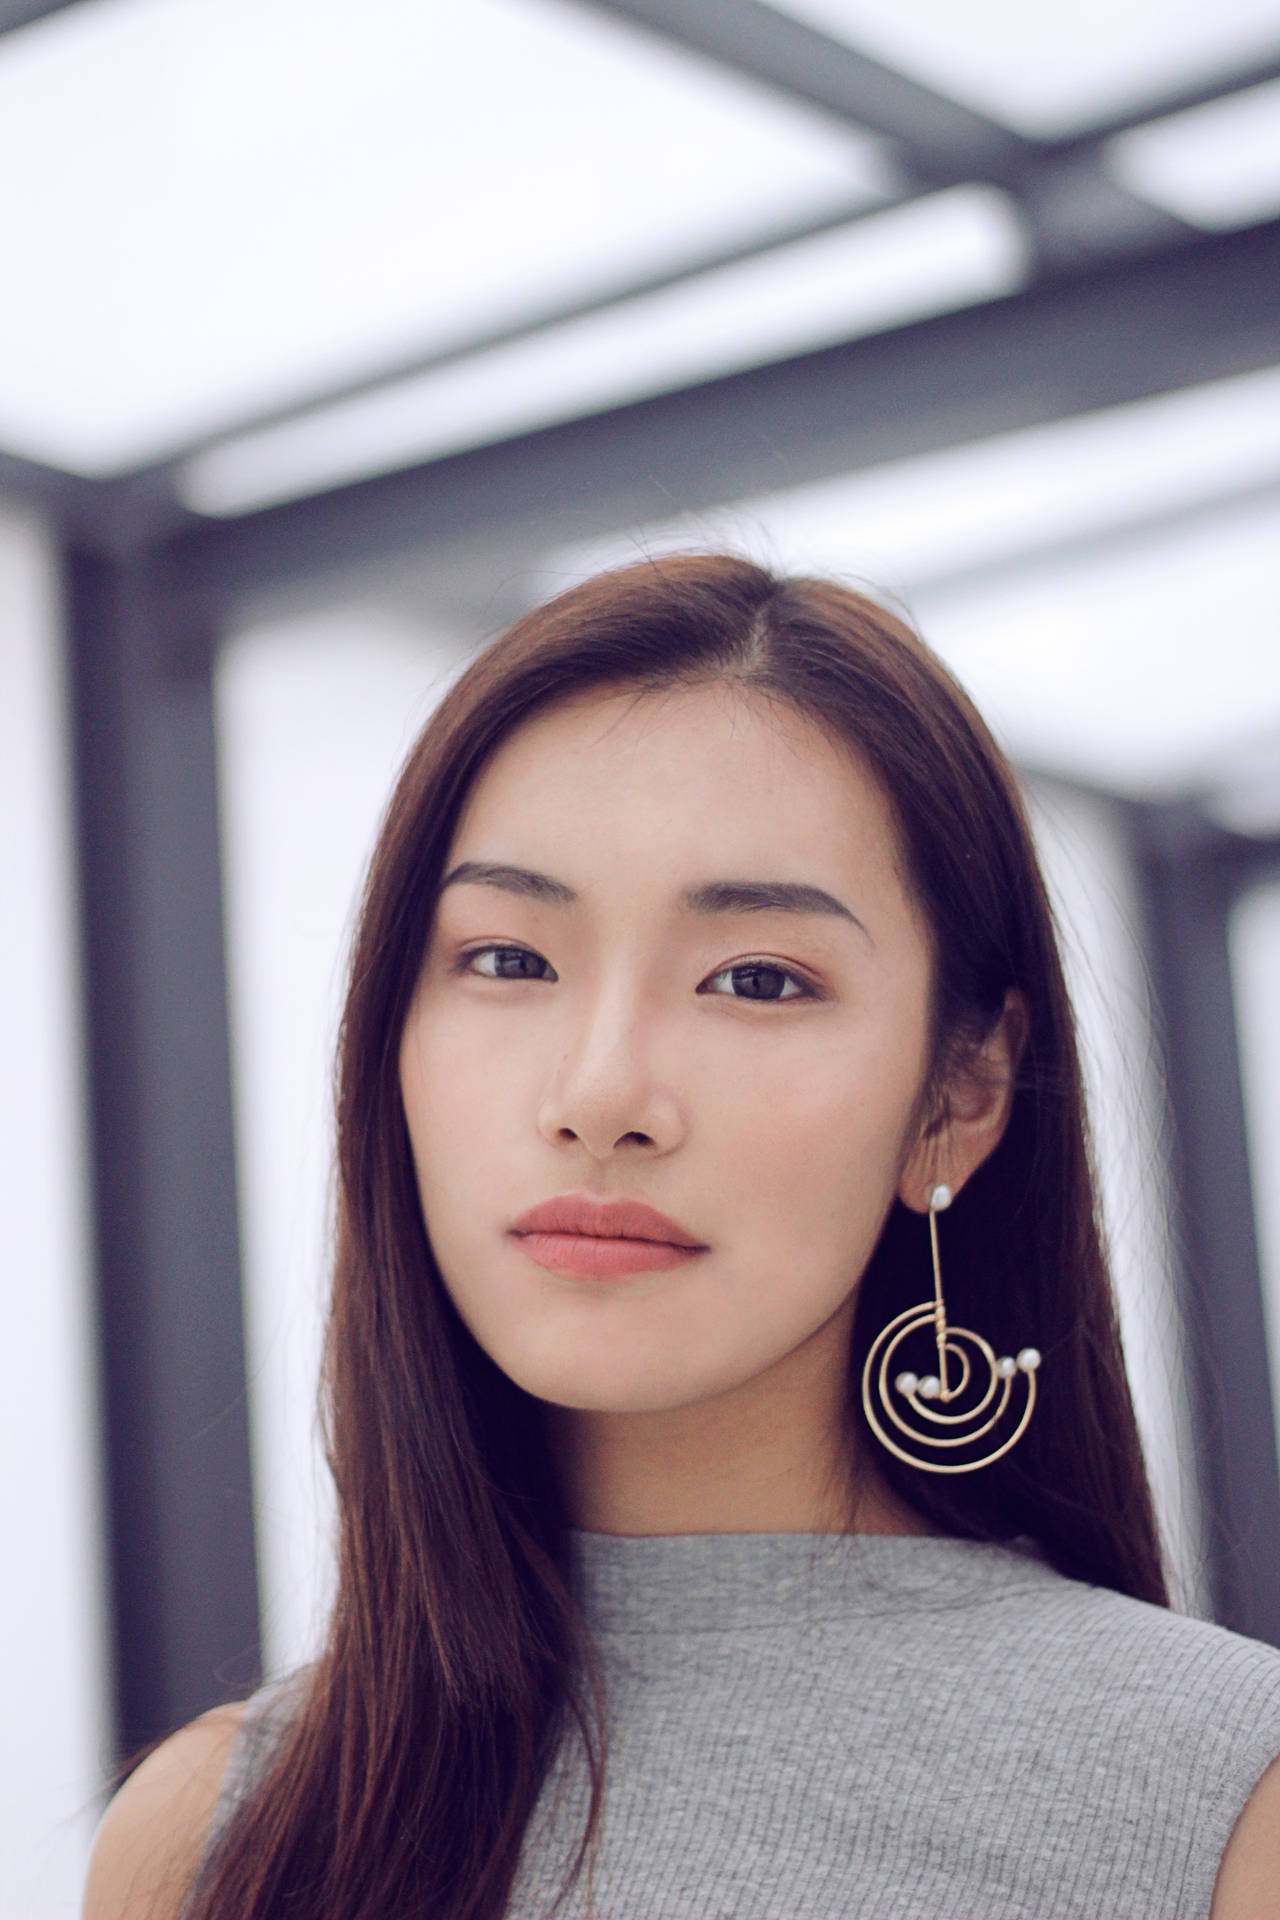 Asian Woman Wearing A Dangling Earring Background